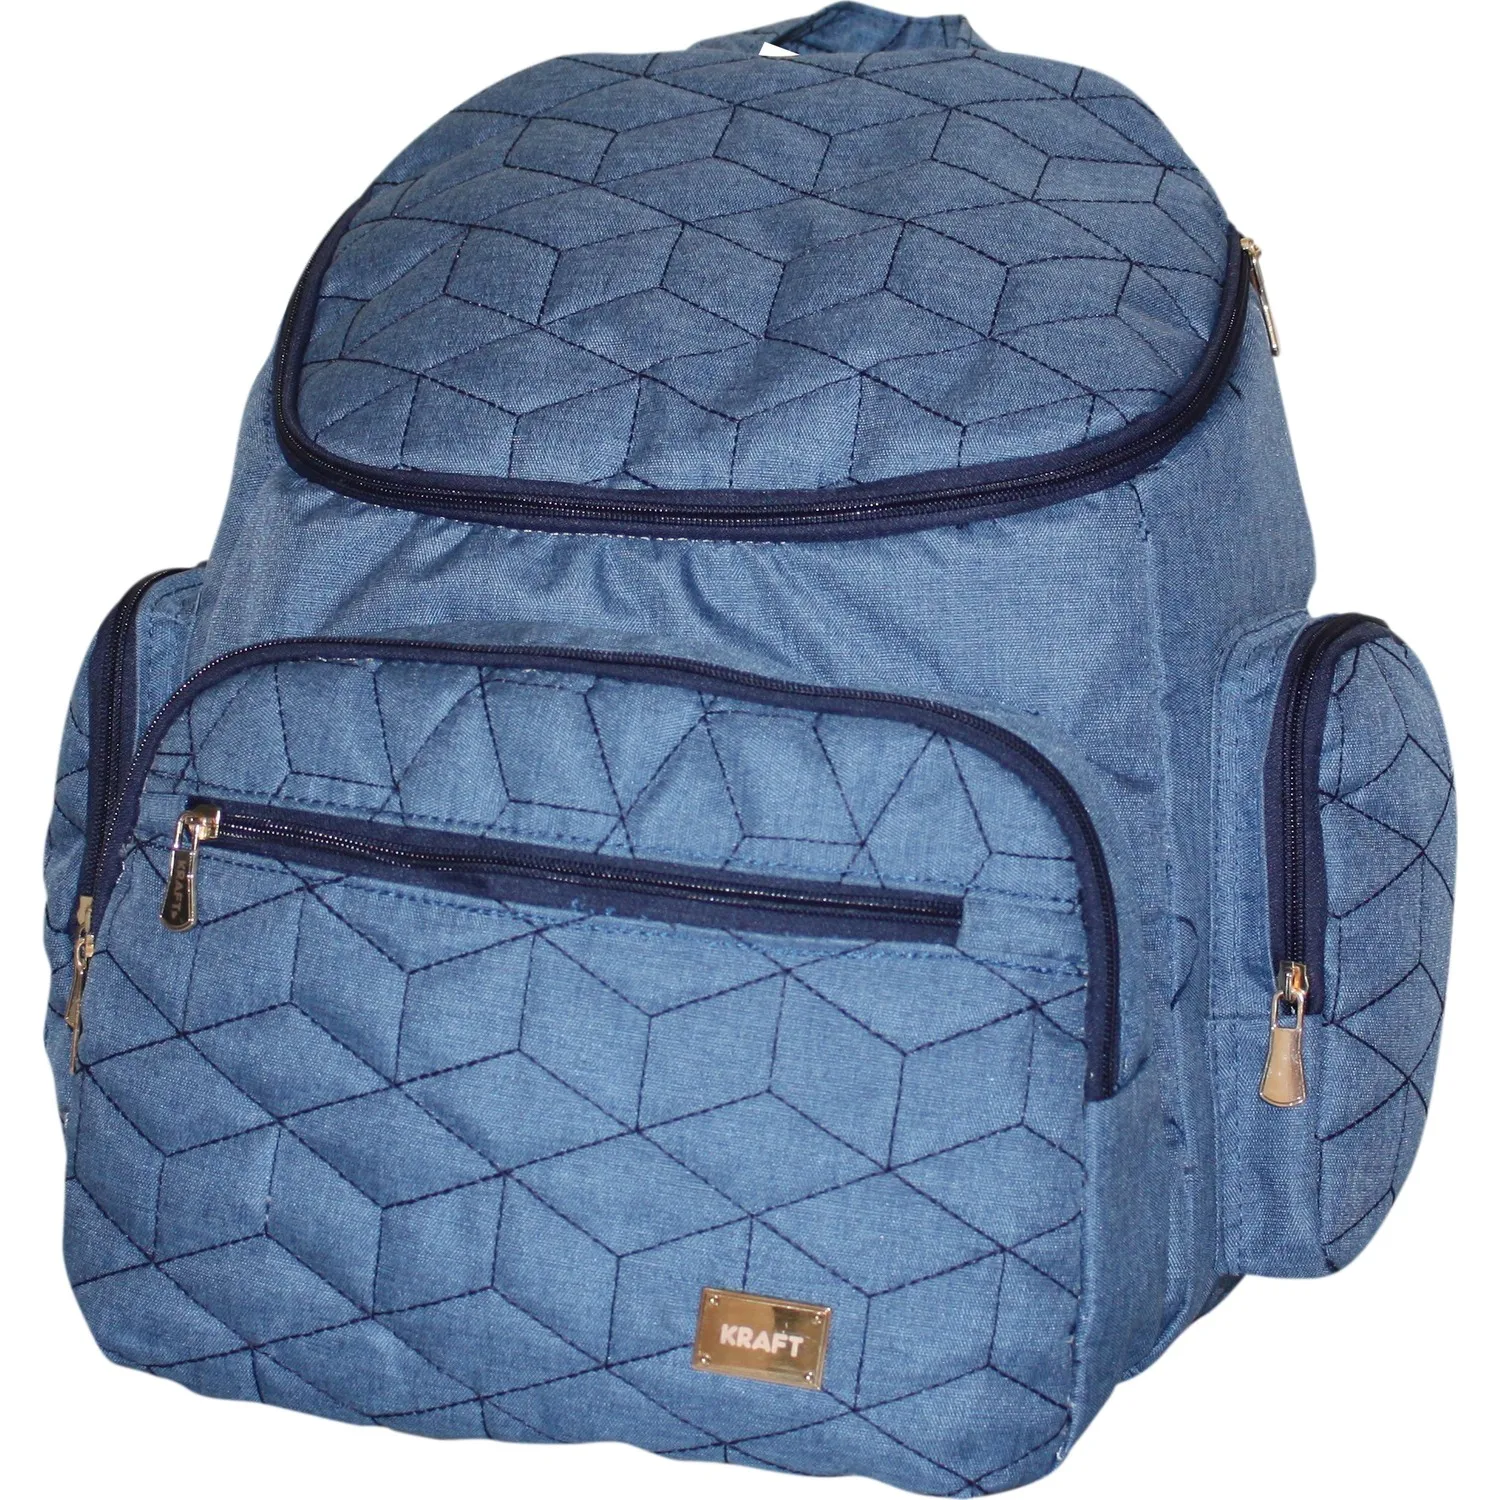 Рюкзак Sheet Baby Bag Stroller Organizer Travel Bag Mommy Diaper Bag сумка Bebe Sac a langer bébé Blue Black Grey baby Backpack